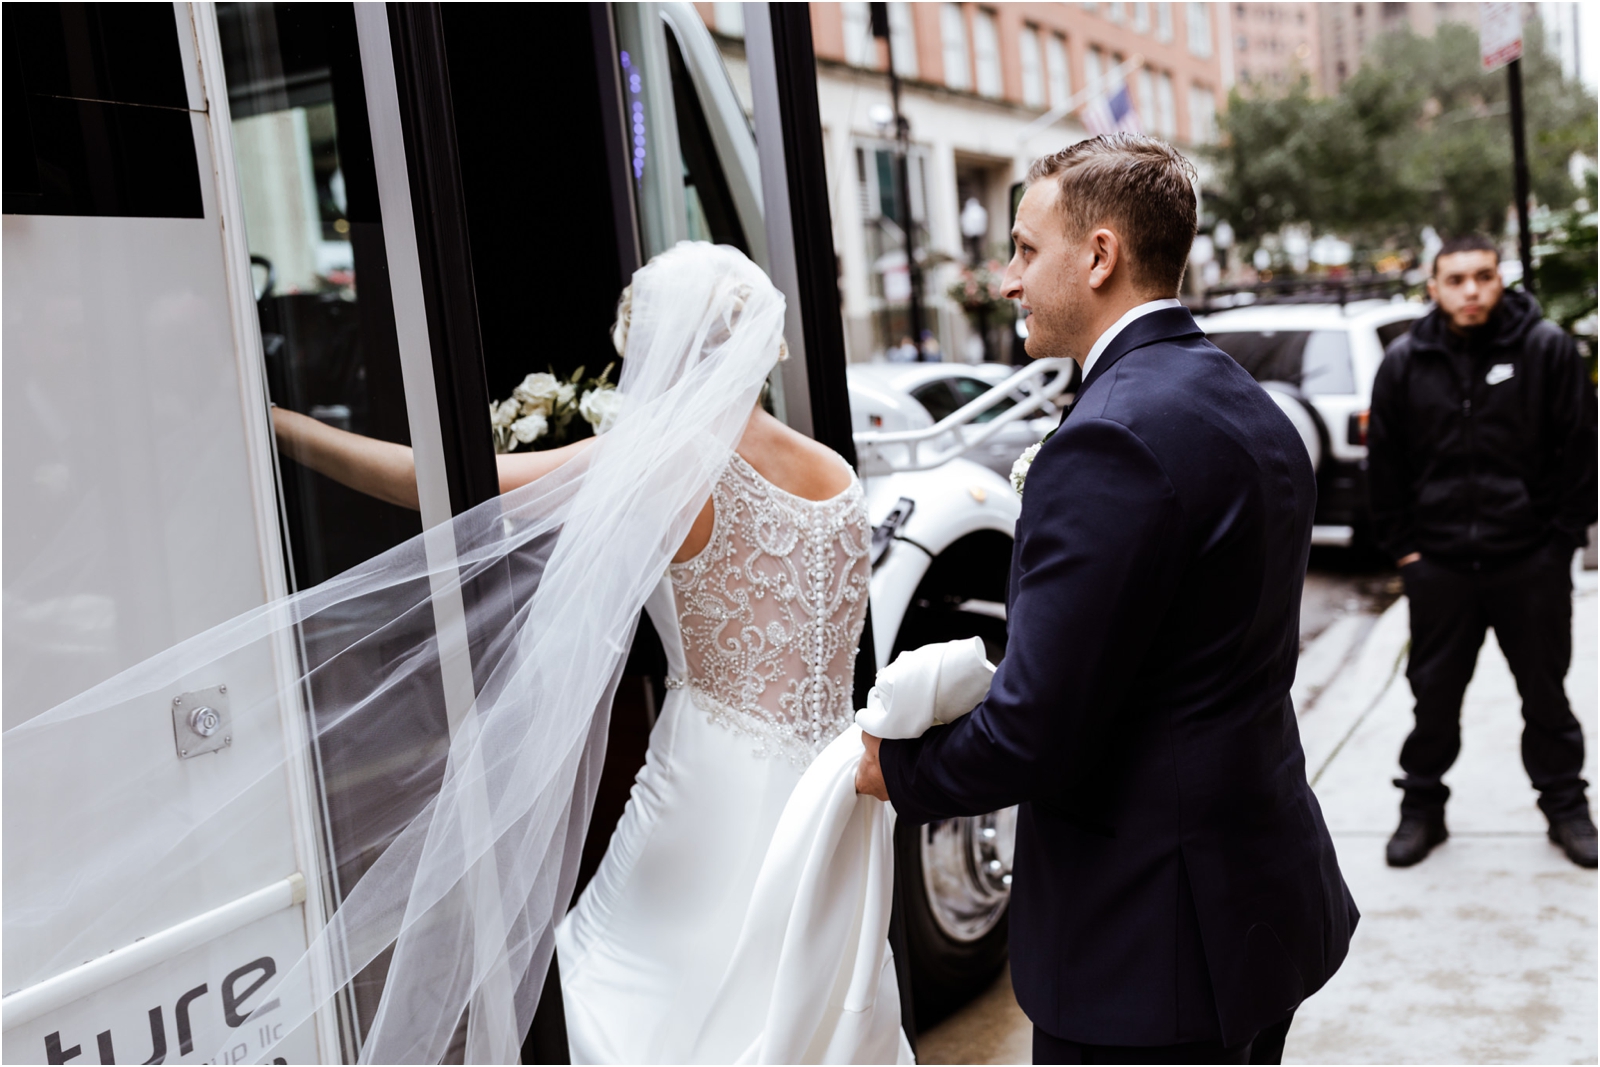 Dalcy-Wedding-Chicago-JillTiongcoPhotography_0019.jpg